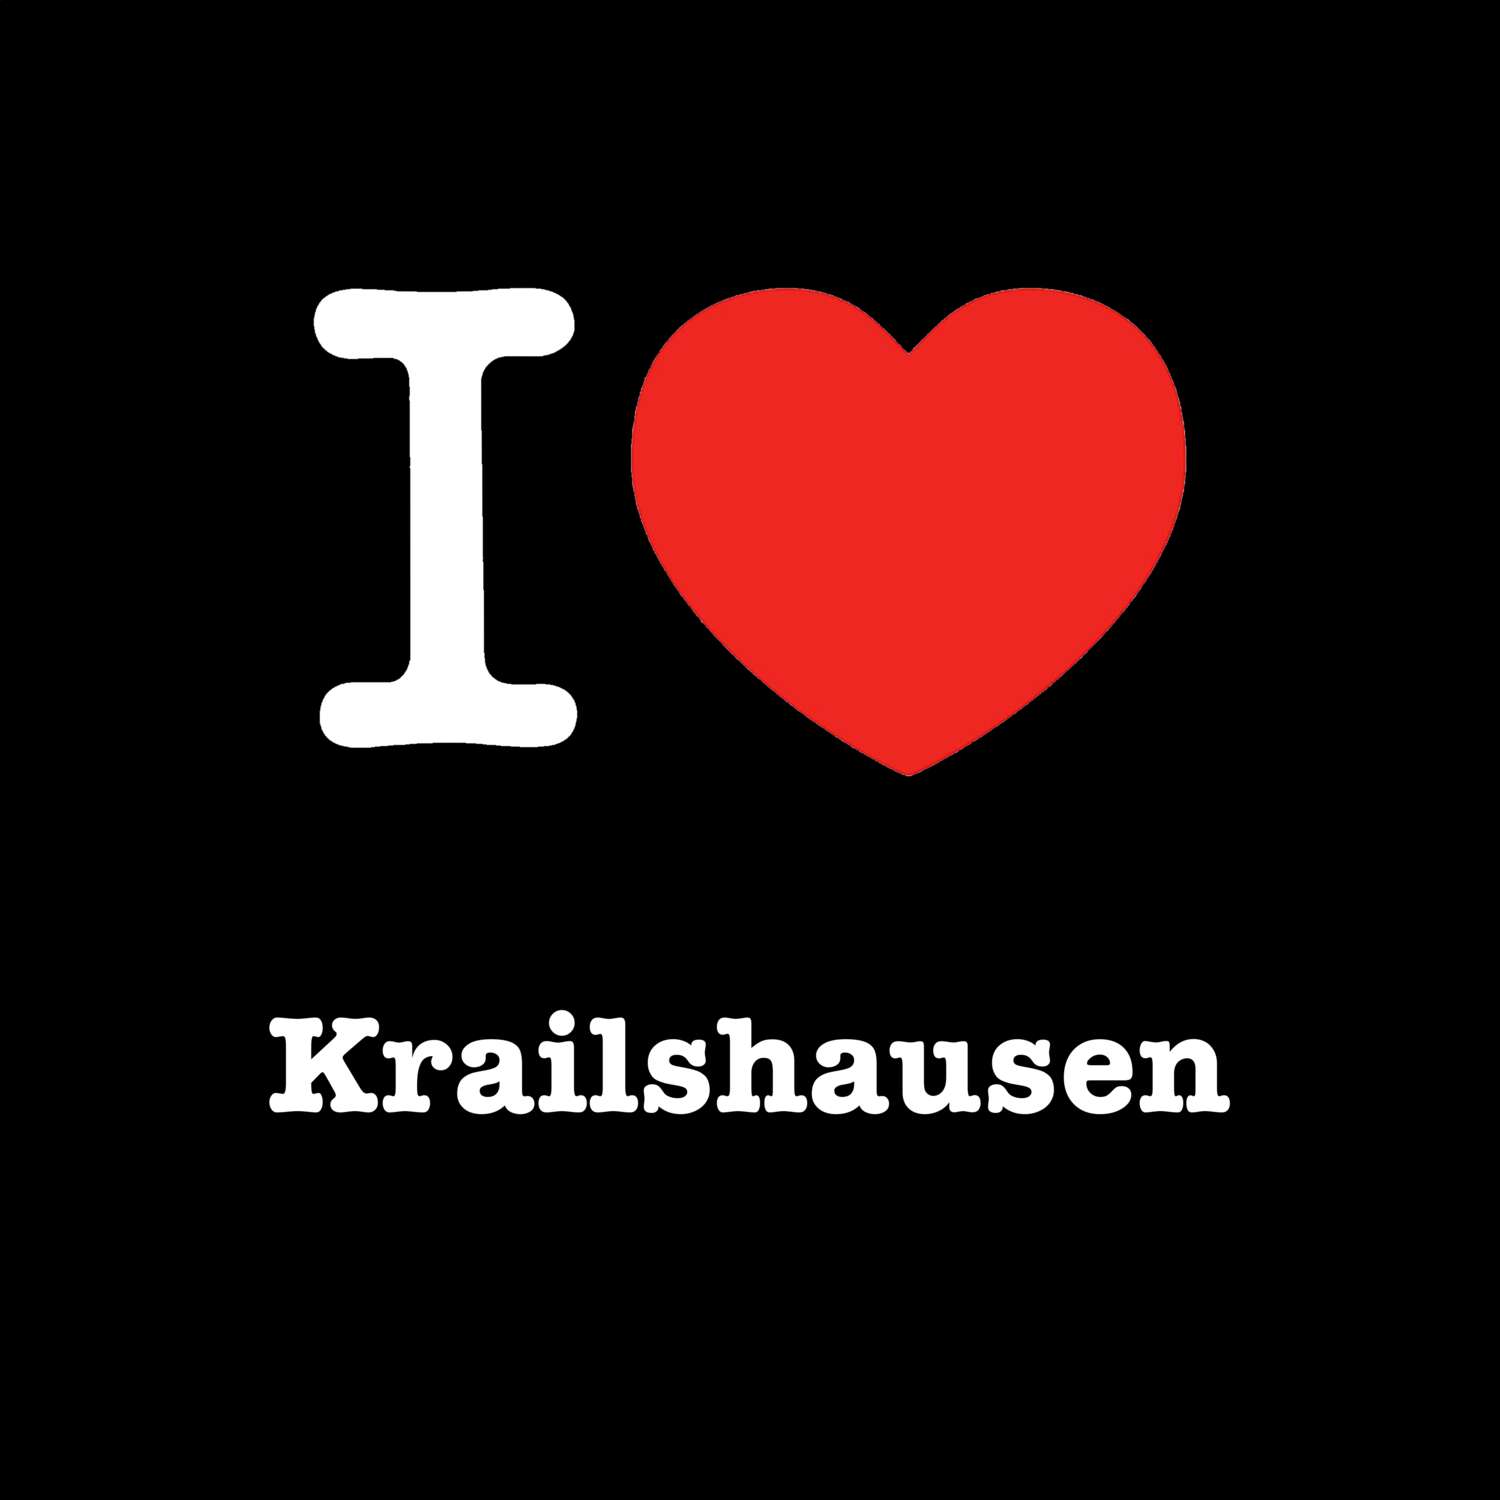 Krailshausen T-Shirt »I love«